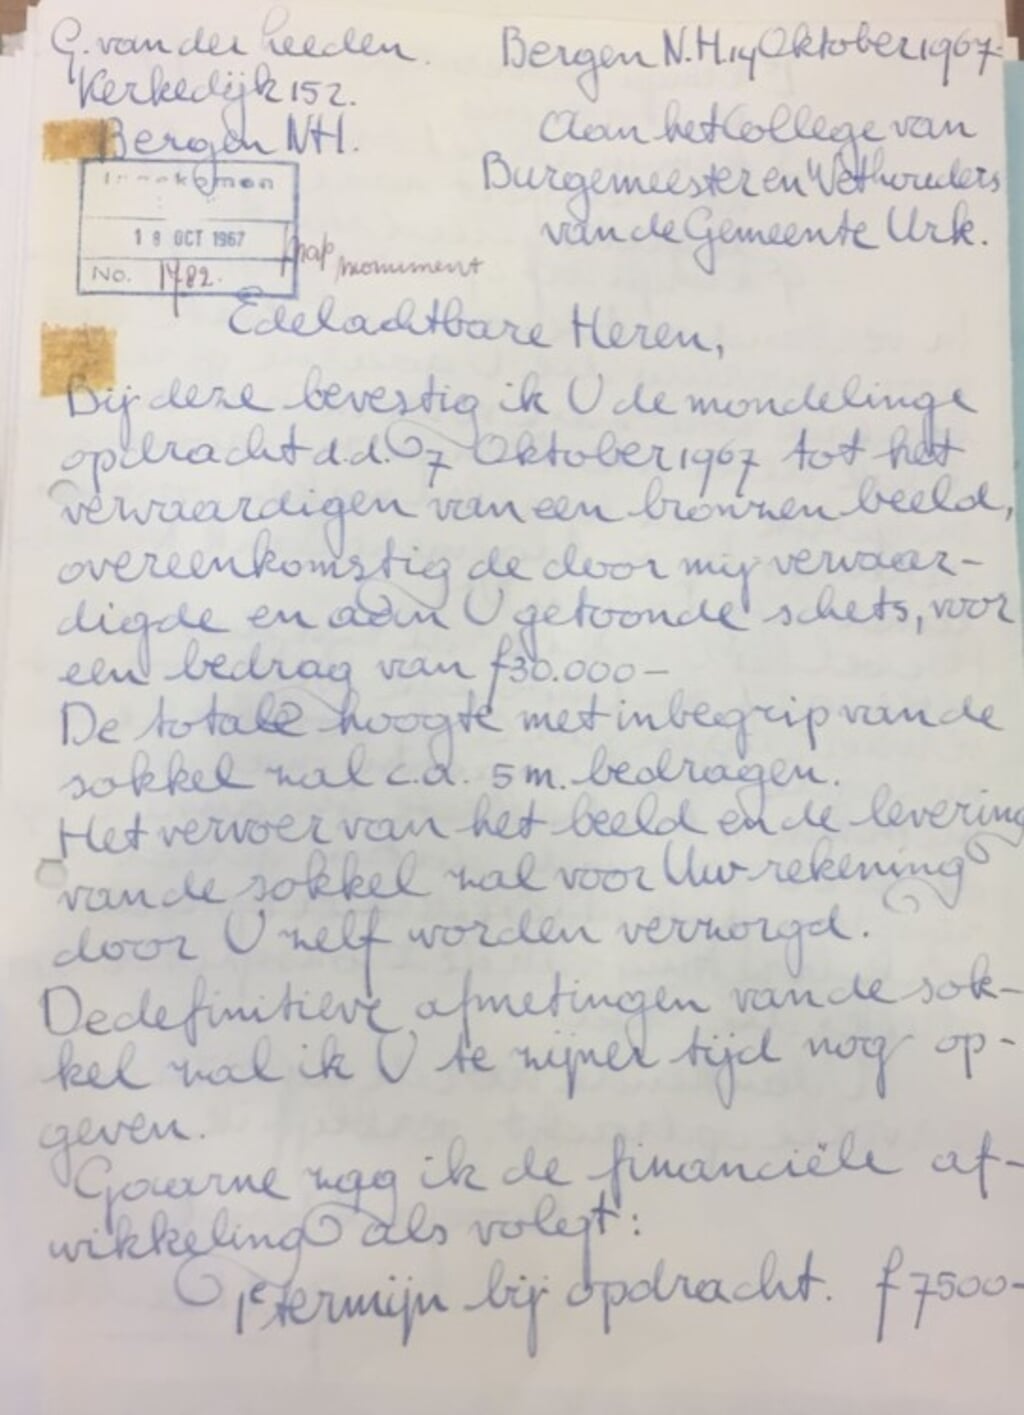 n Een deel van de brief van Gerard van der Leeden aan het college van B & W van Urk, waarin hij de opdracht bevestigt.